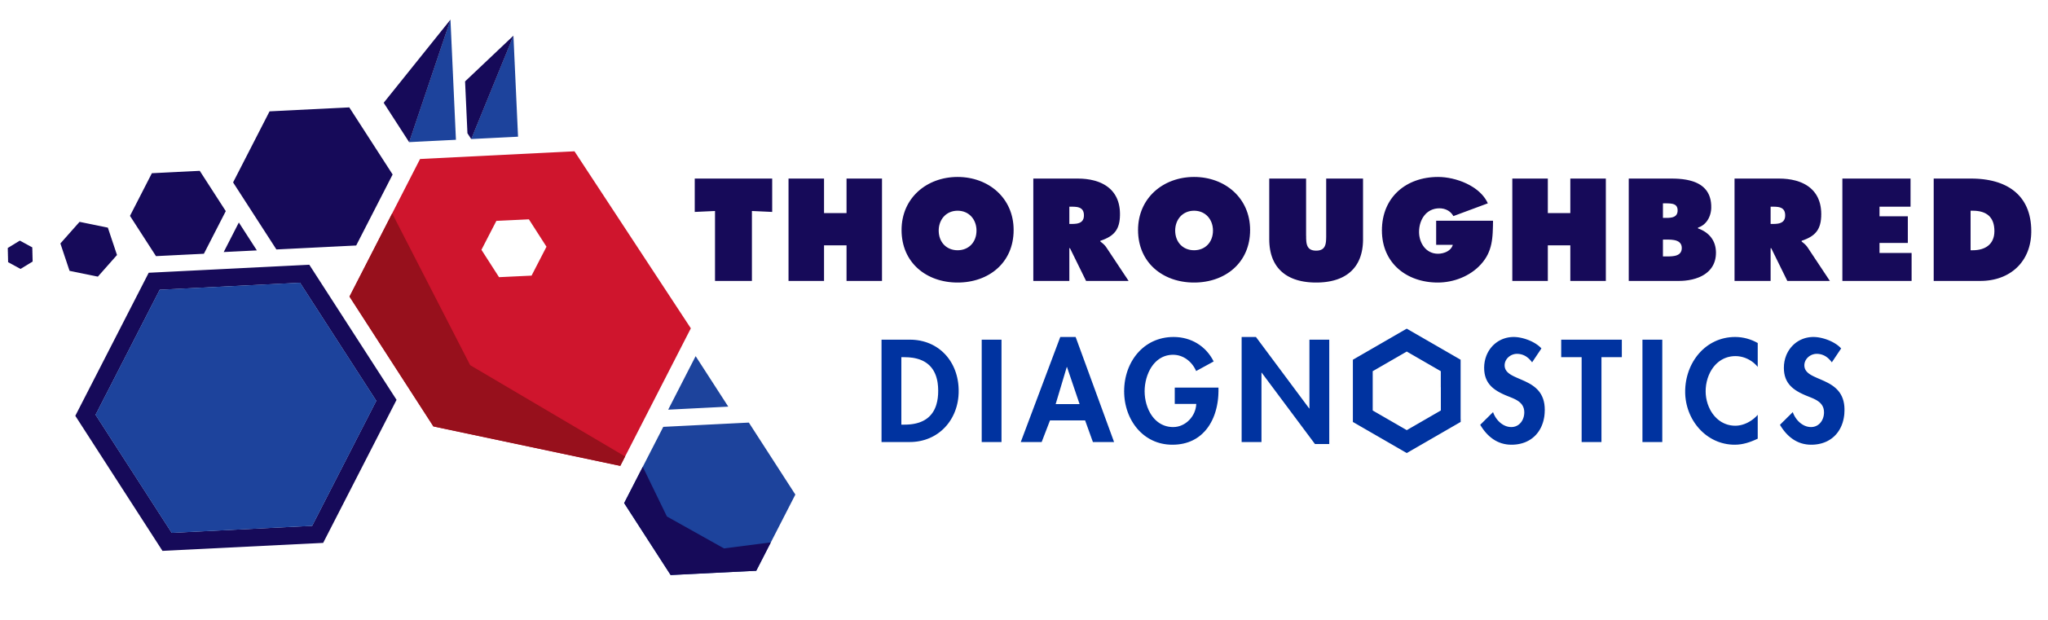 thoroughbred logo